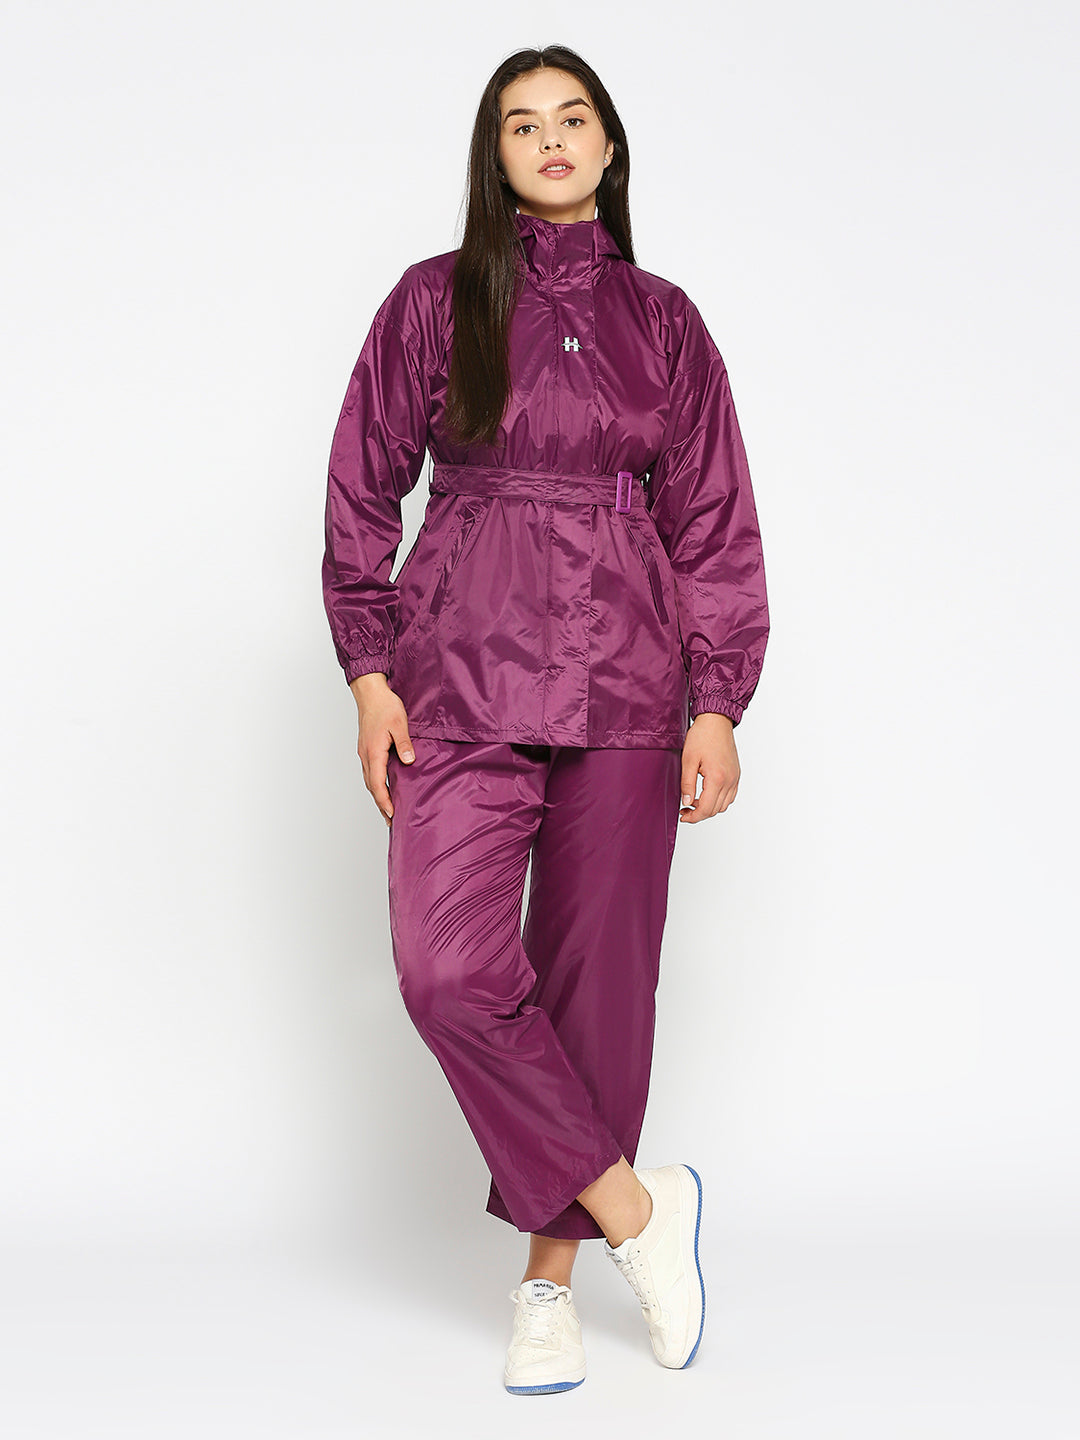 Highlands Genius Waterproof Rain Suit For Women